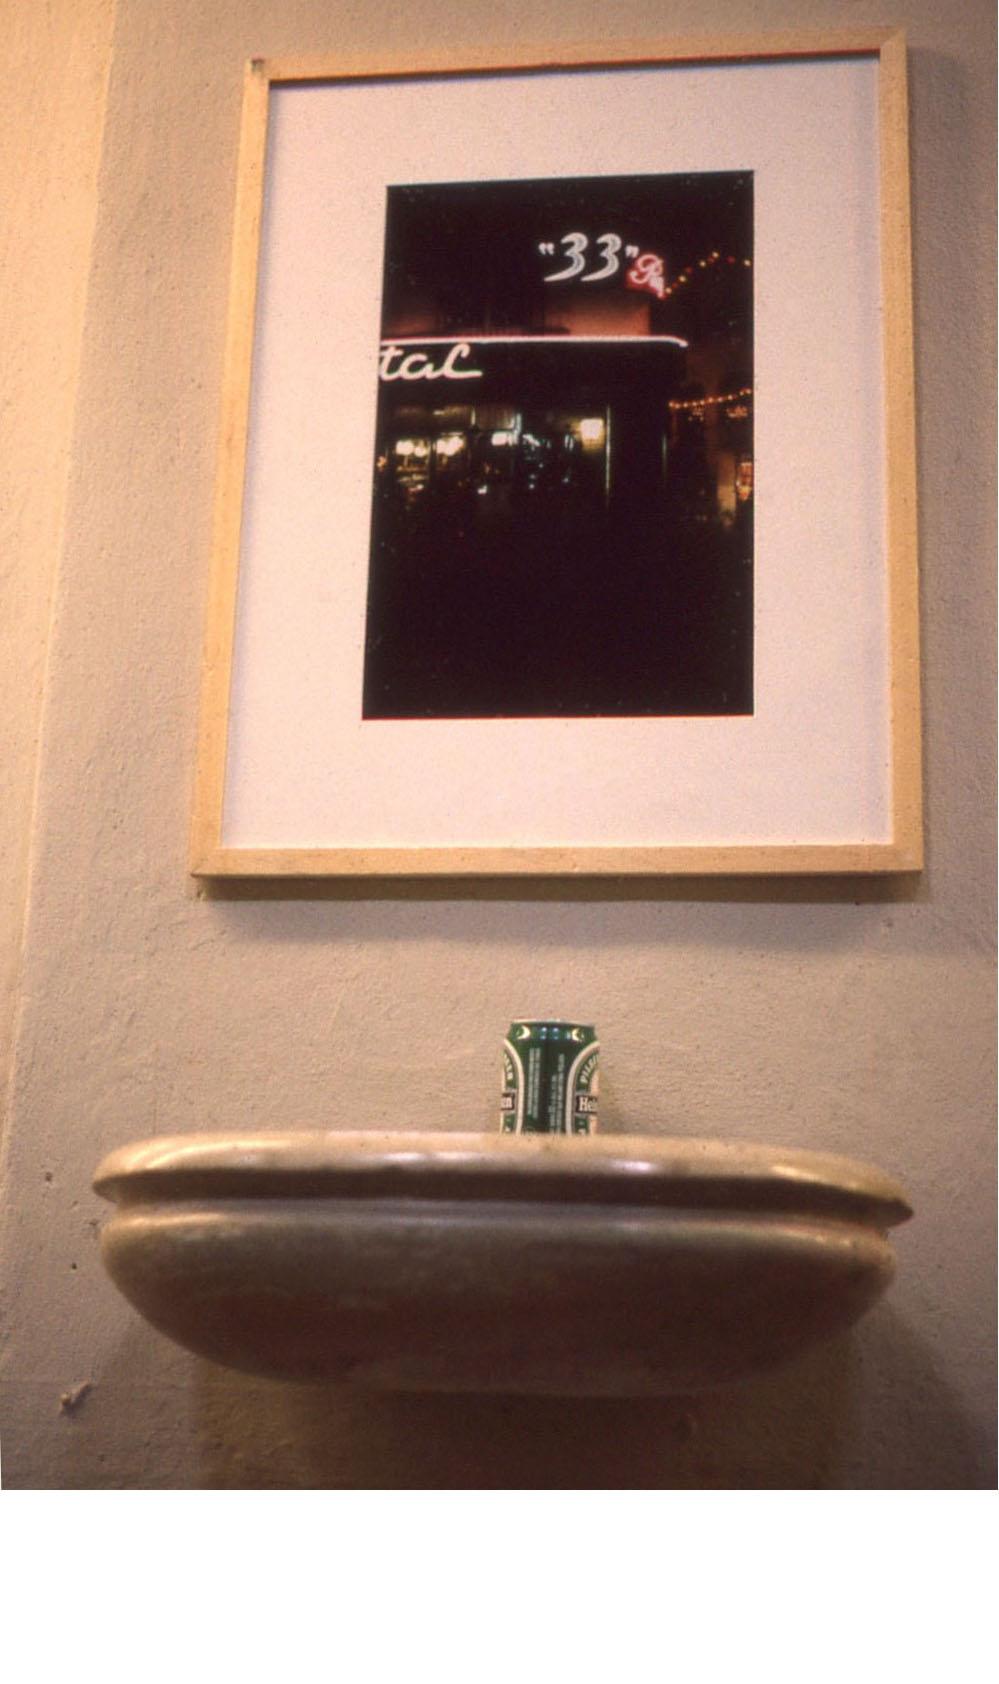 24- Mon expo à Parme, un bénitier, une canette de bière, 1993